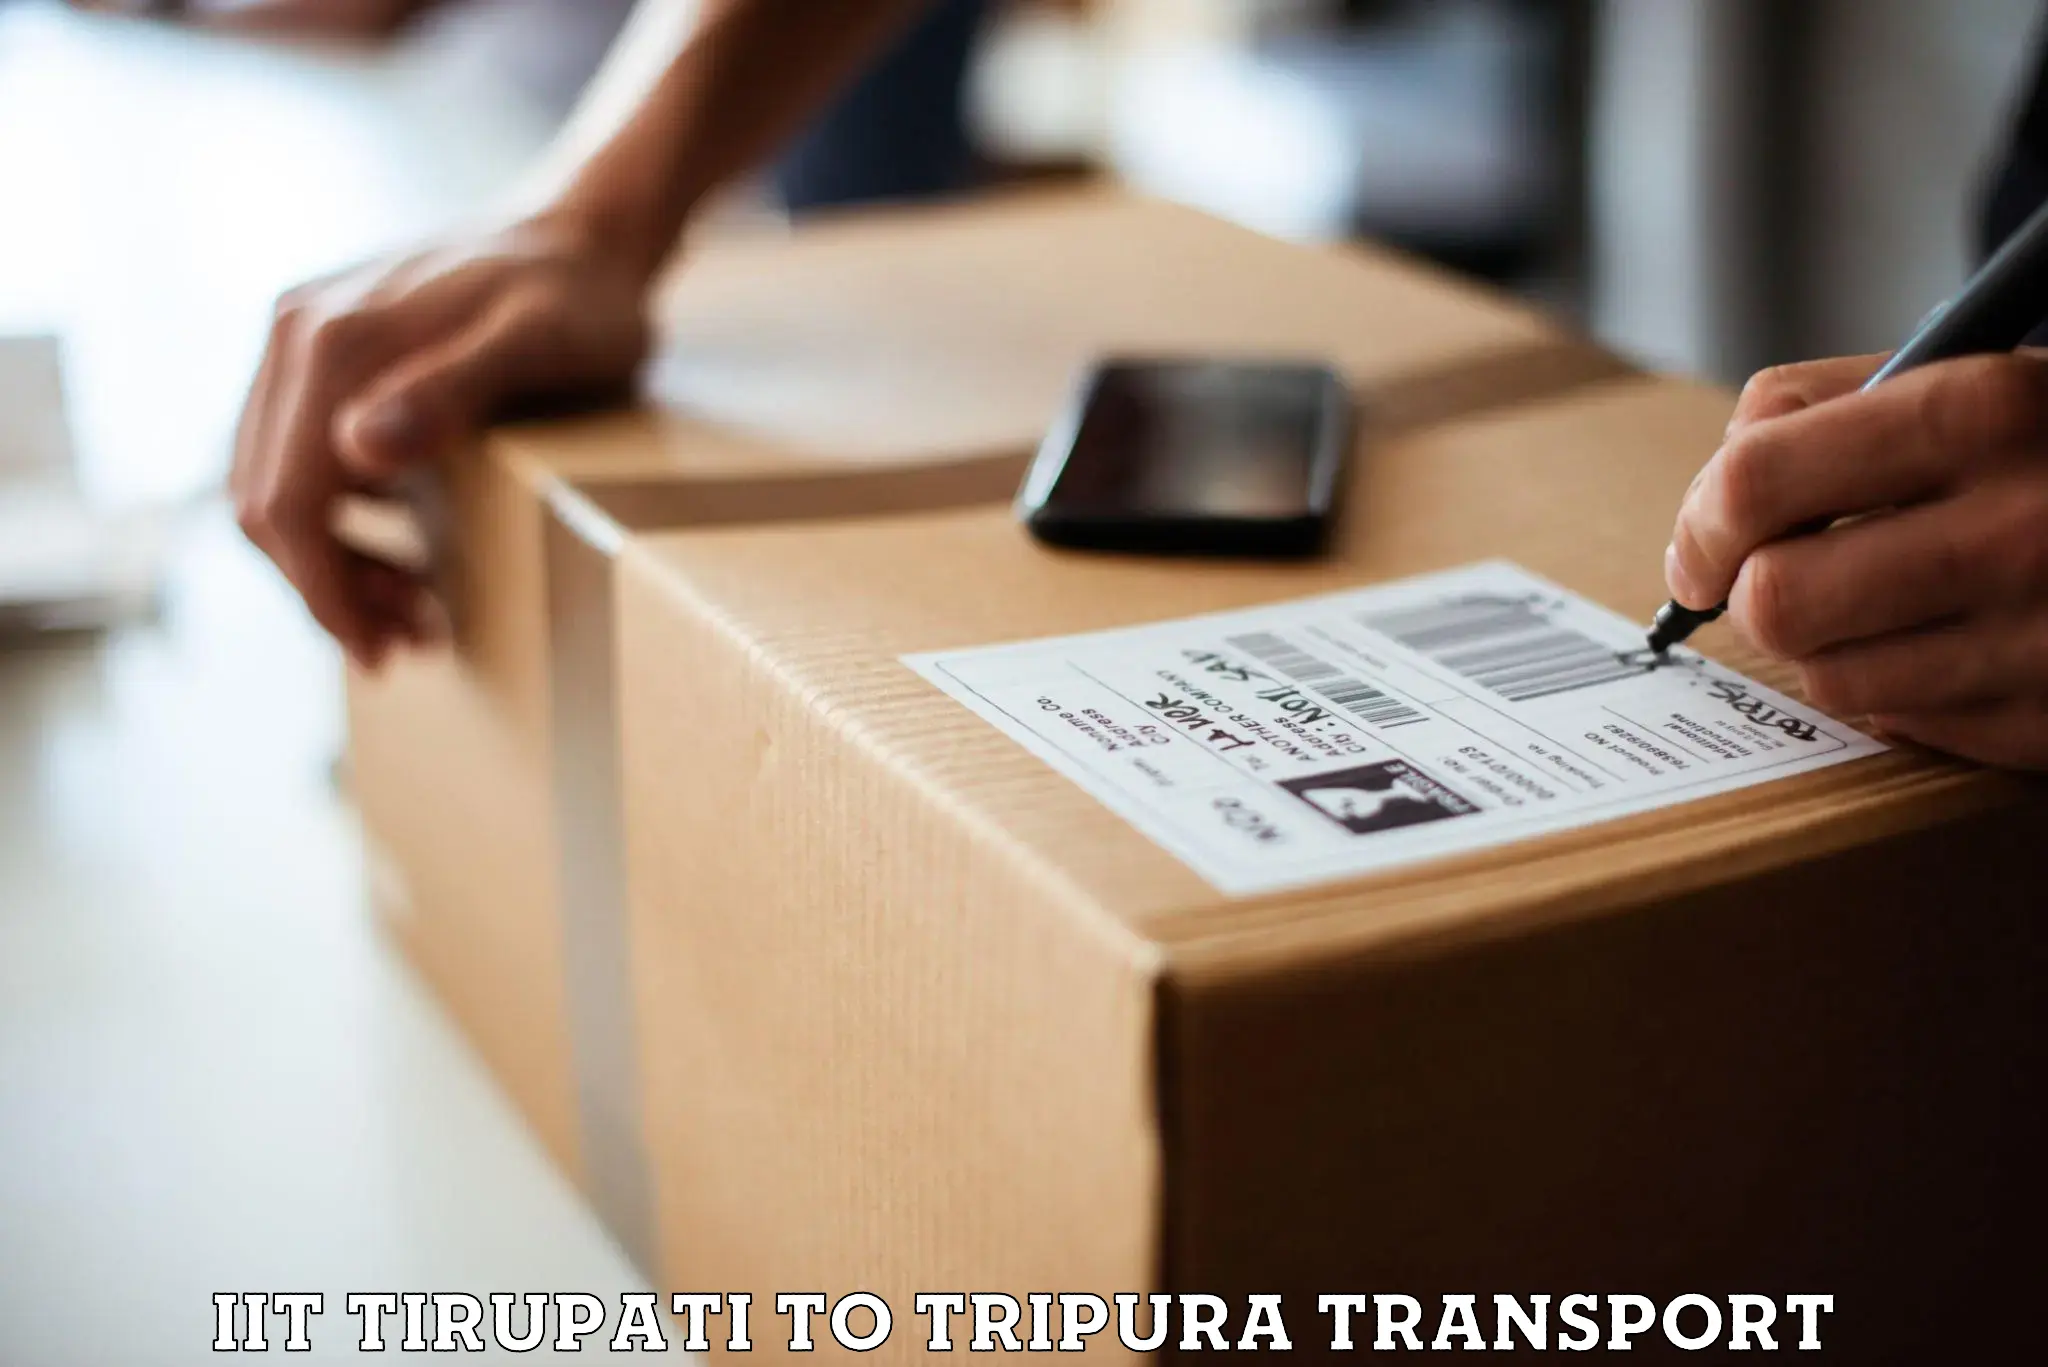 Scooty parcel in IIT Tirupati to Tripura